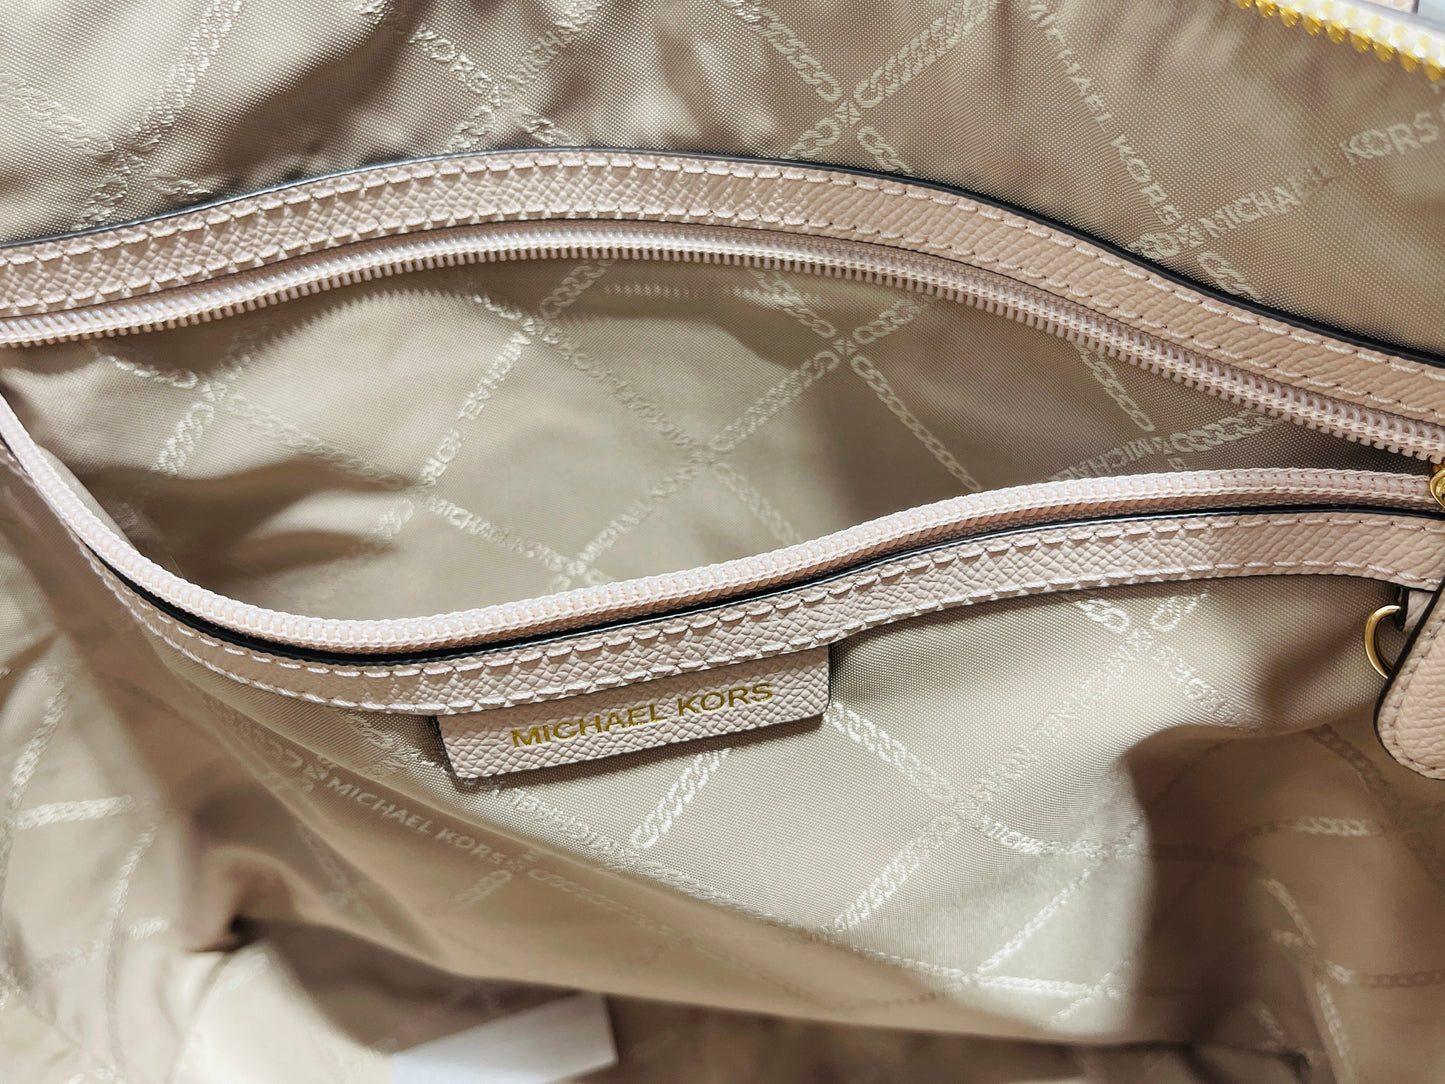 Charlotte Saffiano Leather Top Zip Pink Blush Tote Shoulder/Handbag Designer By Michael Kors  Size: Large